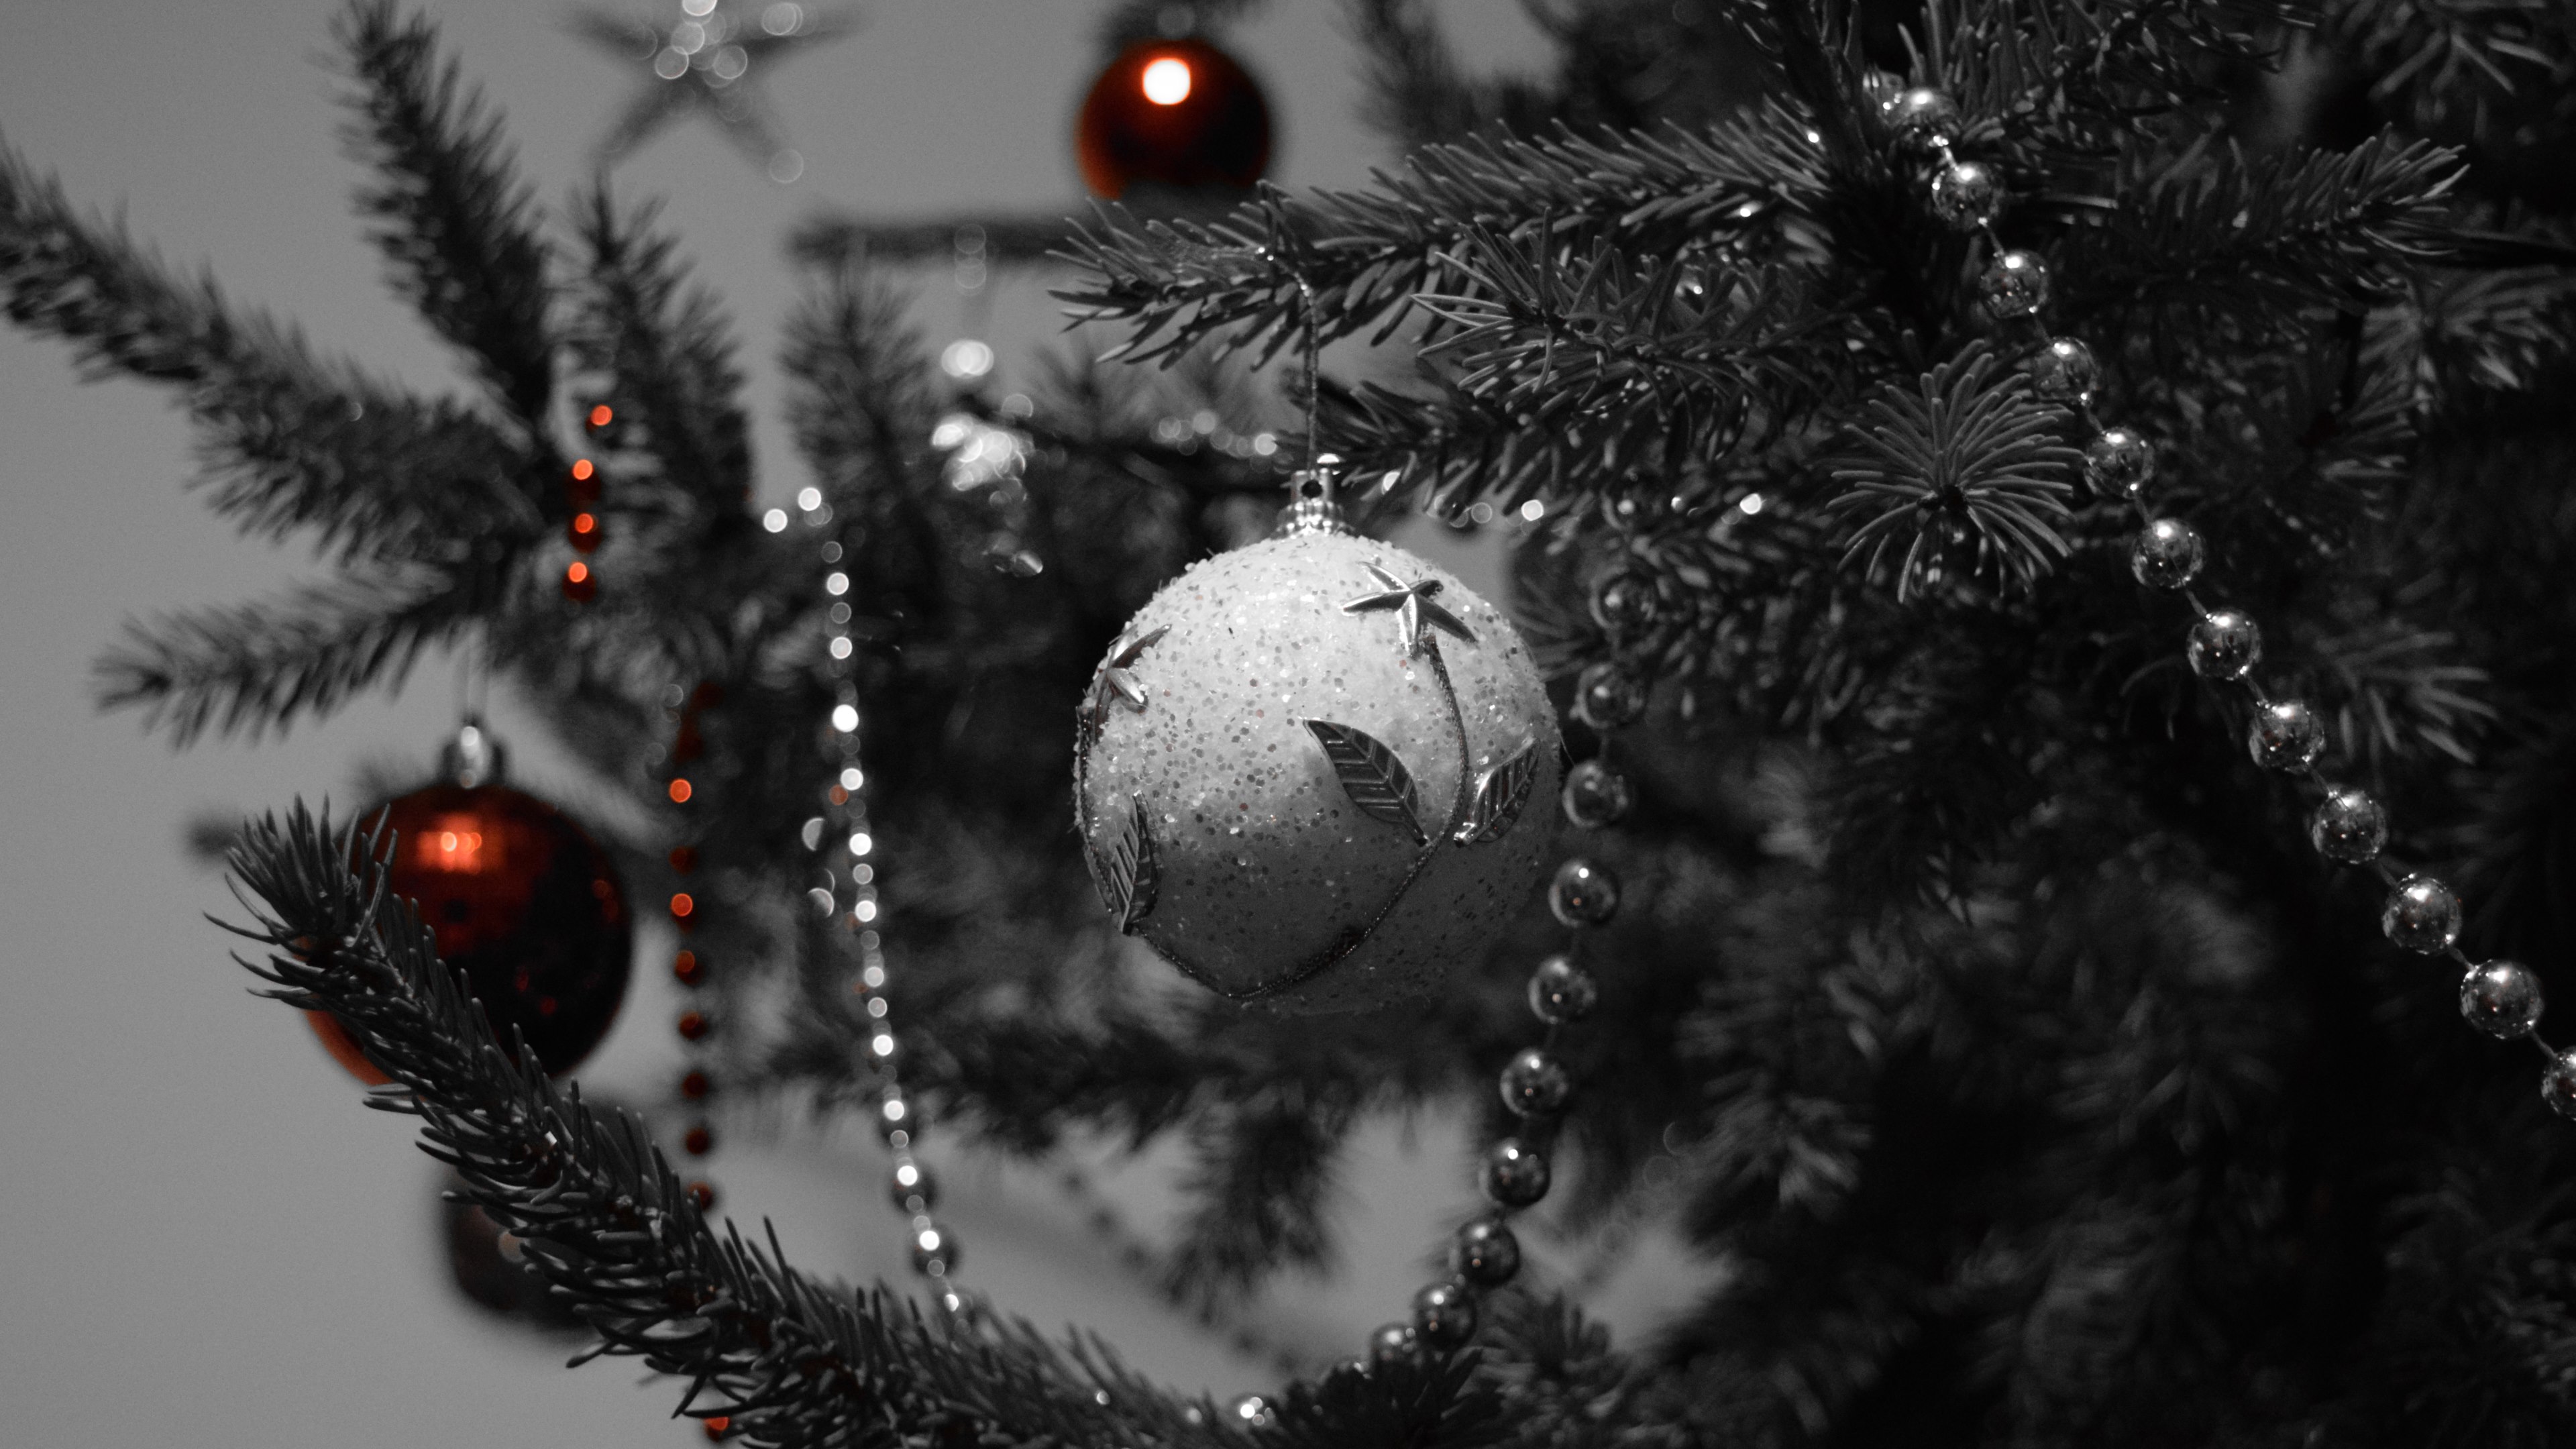 schwarze weihnachtstapete,weihnachtsschmuck,baum,schwarz,weihnachtsbaum,weihnachten